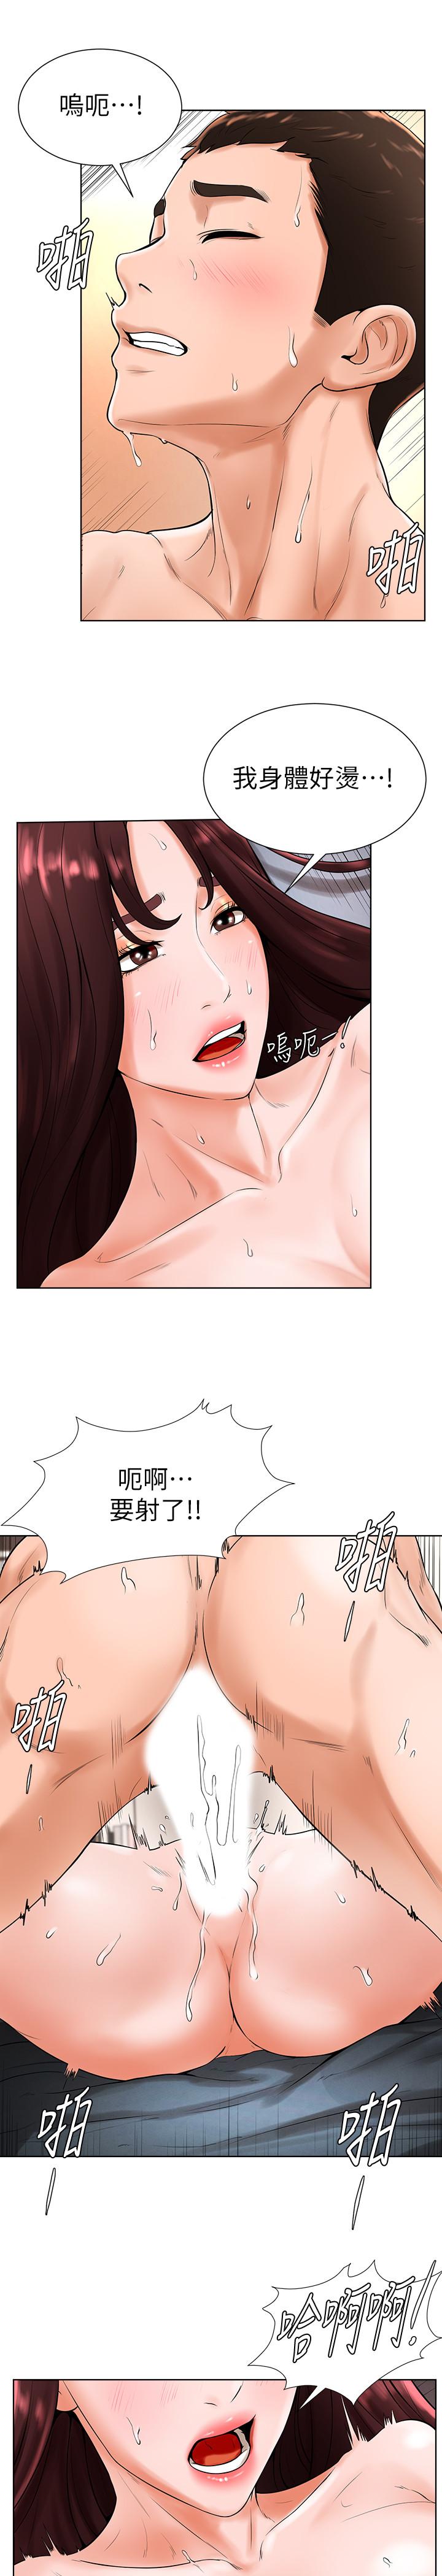 韩国污漫画 撞球甜心 第20话-把第一次给我的小爱 22